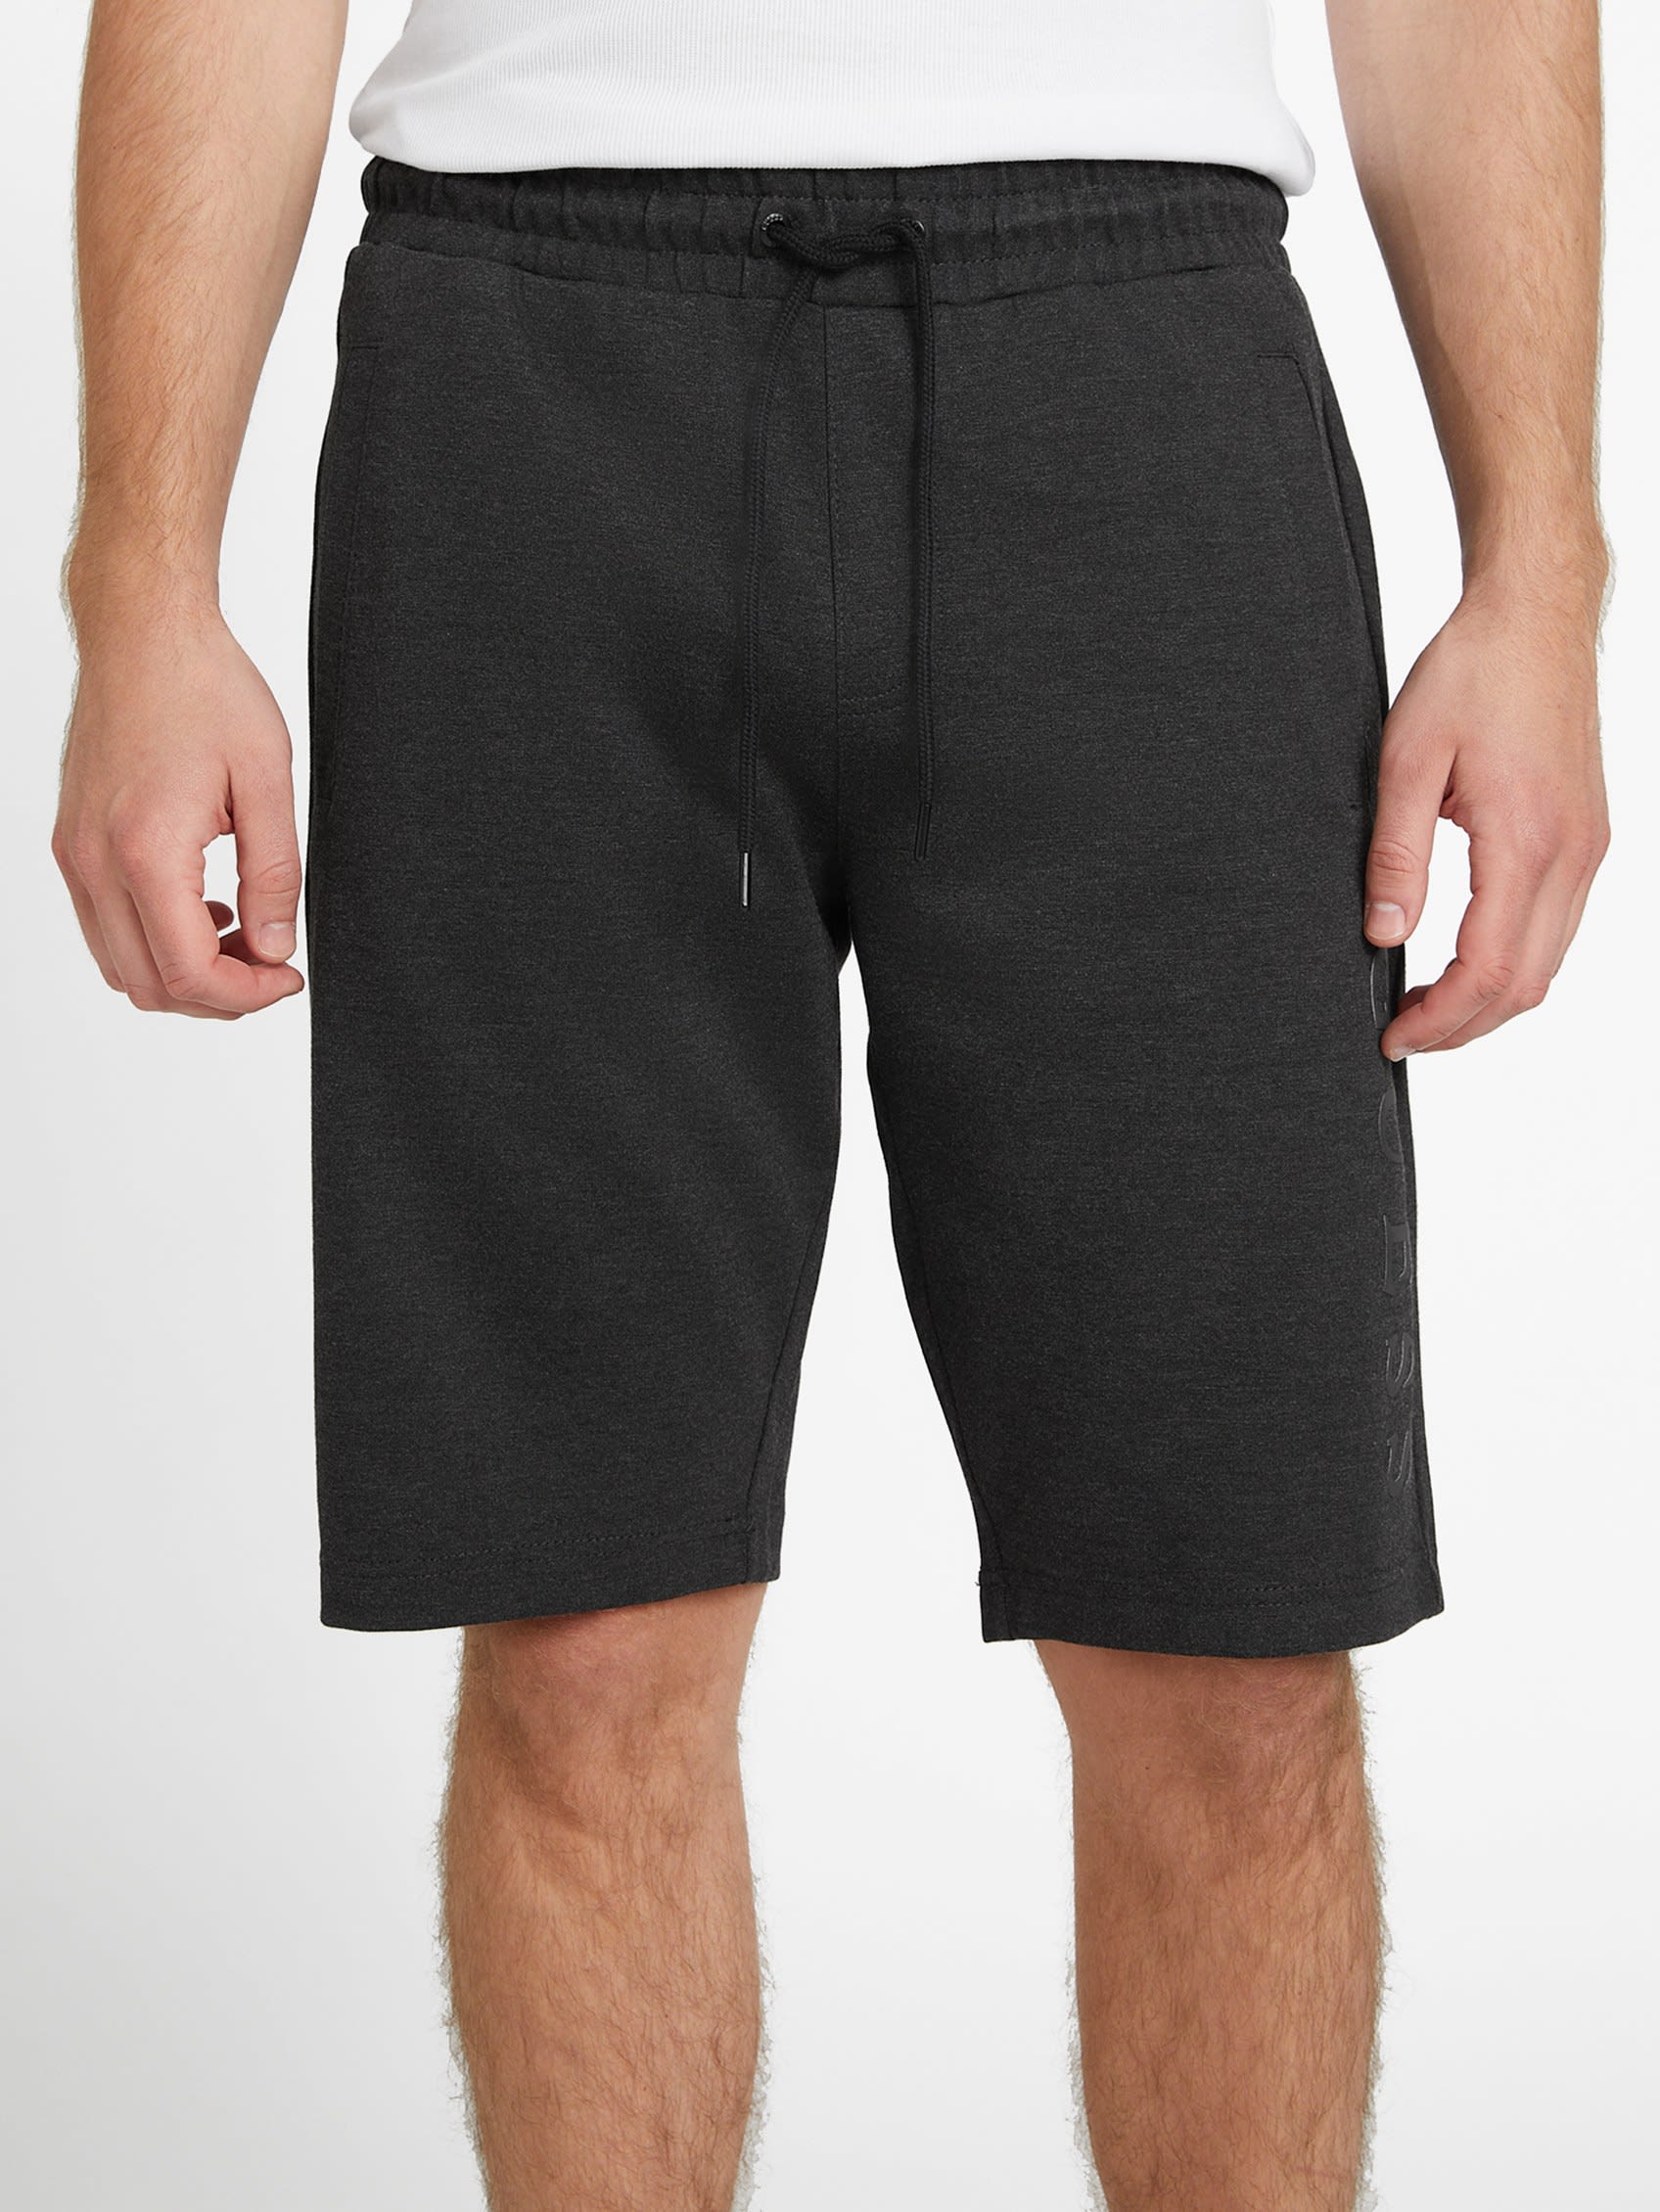 Factory Landon Drawstring Shorts